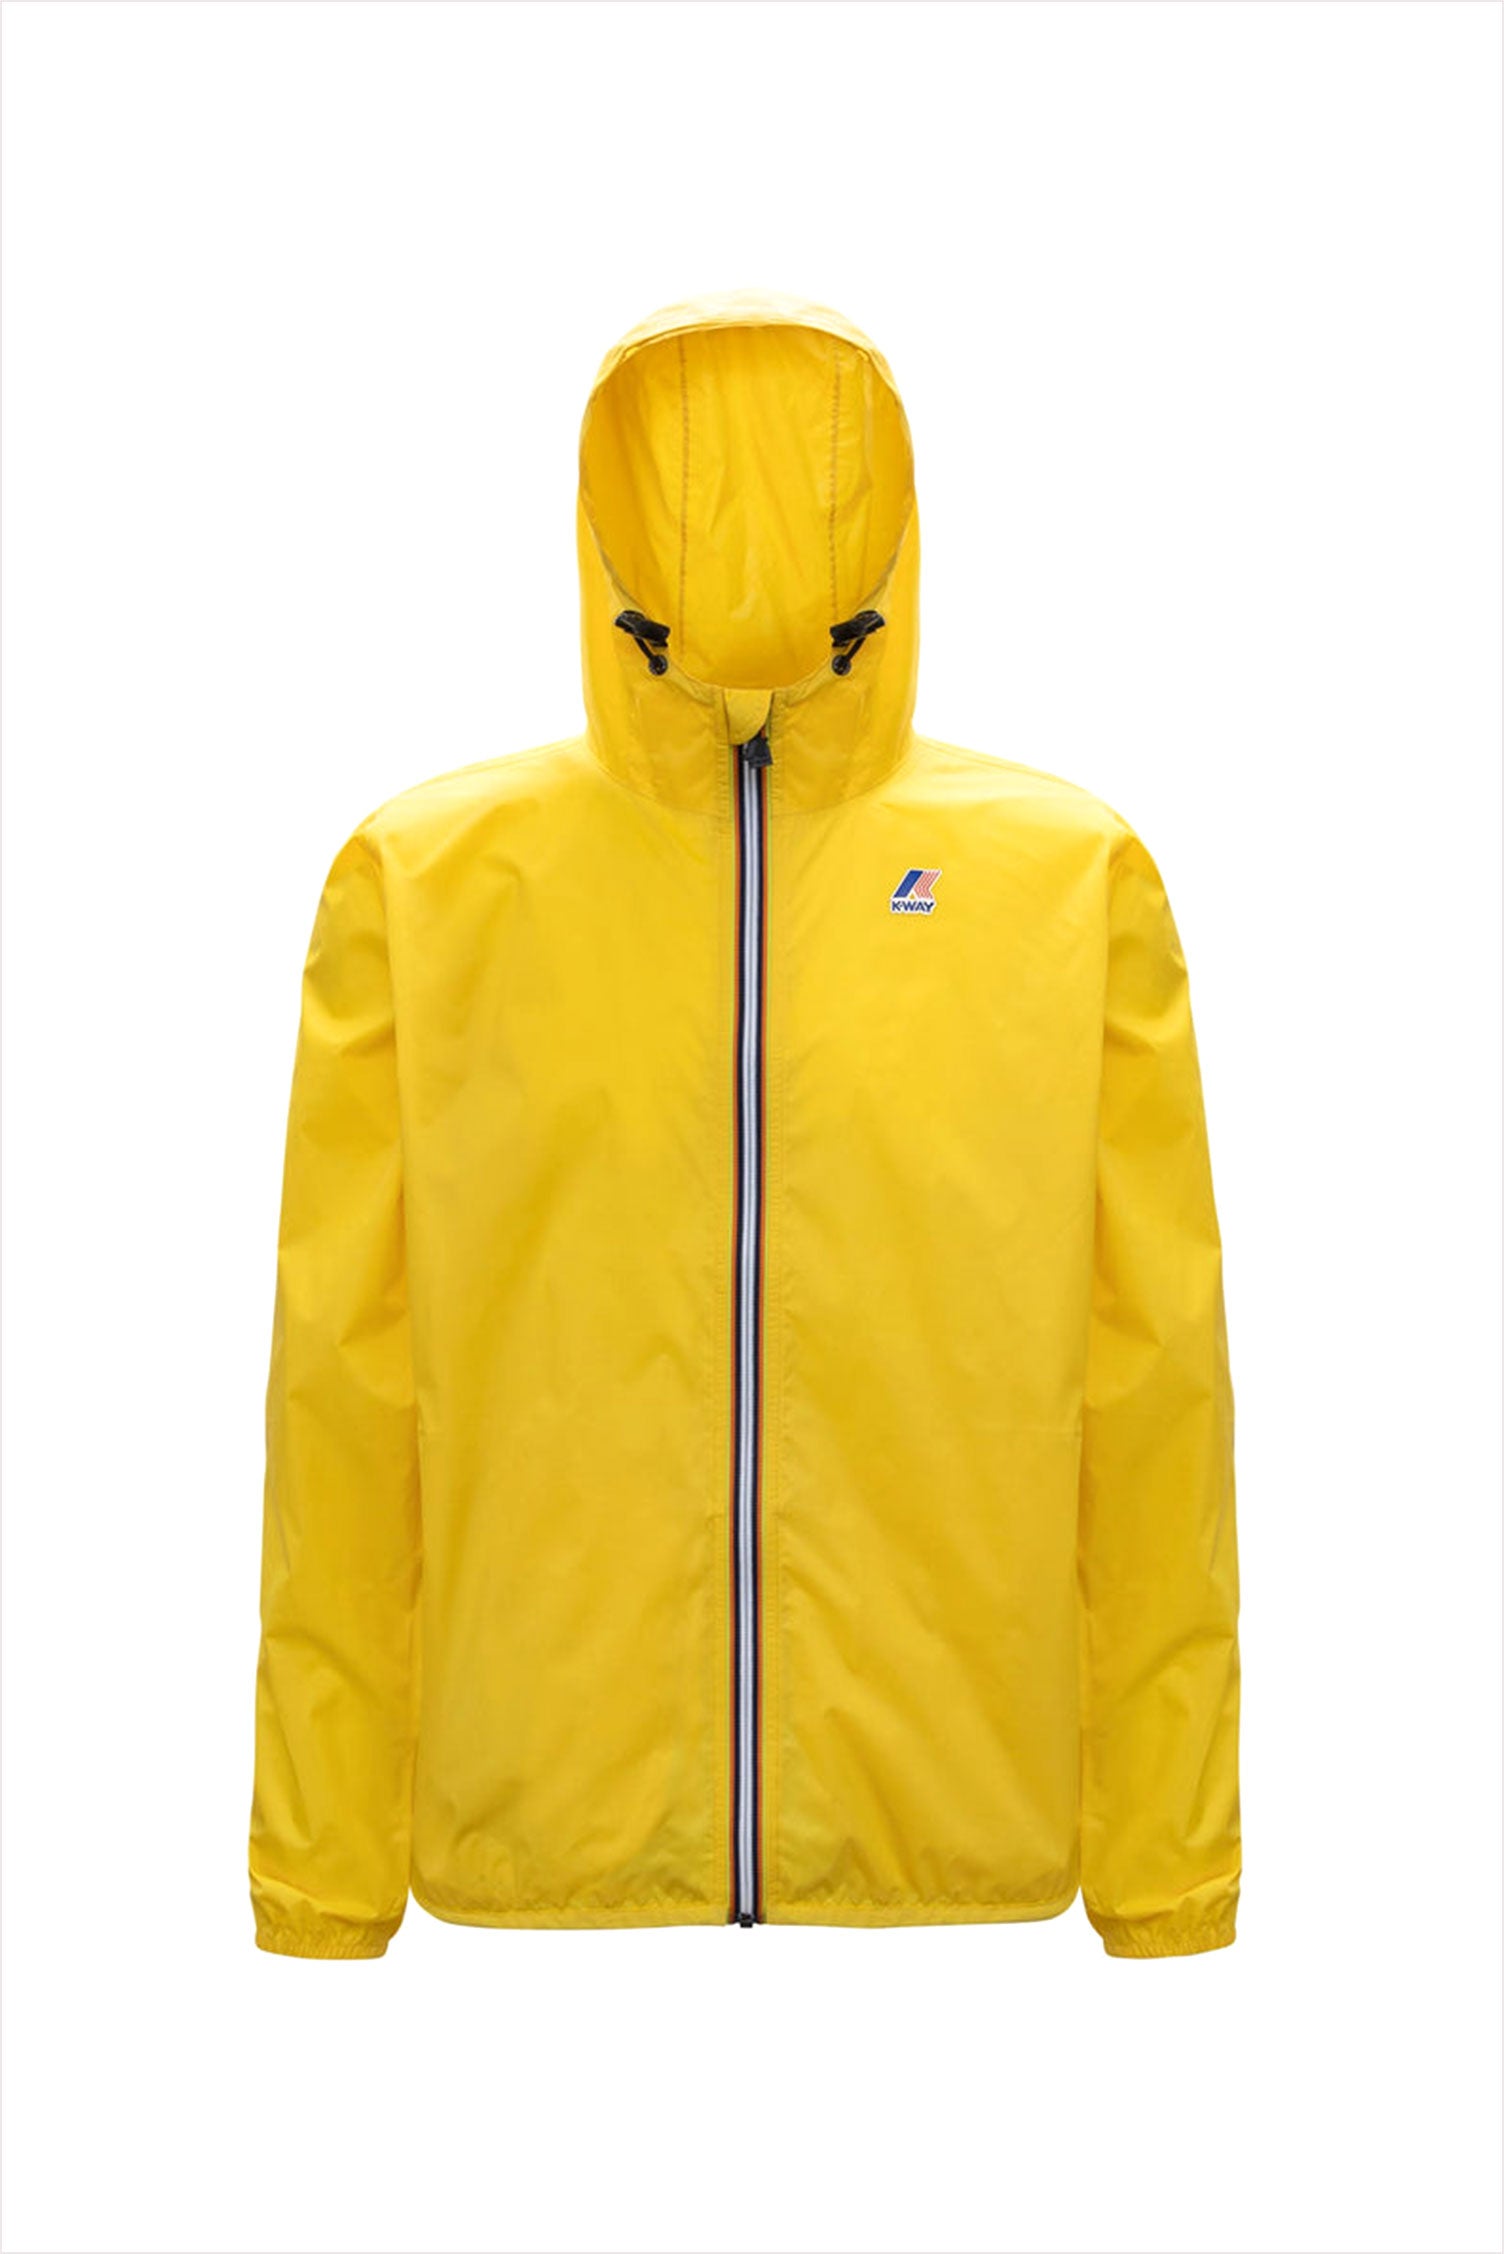 K-way Claude waterproof short jacket with hood